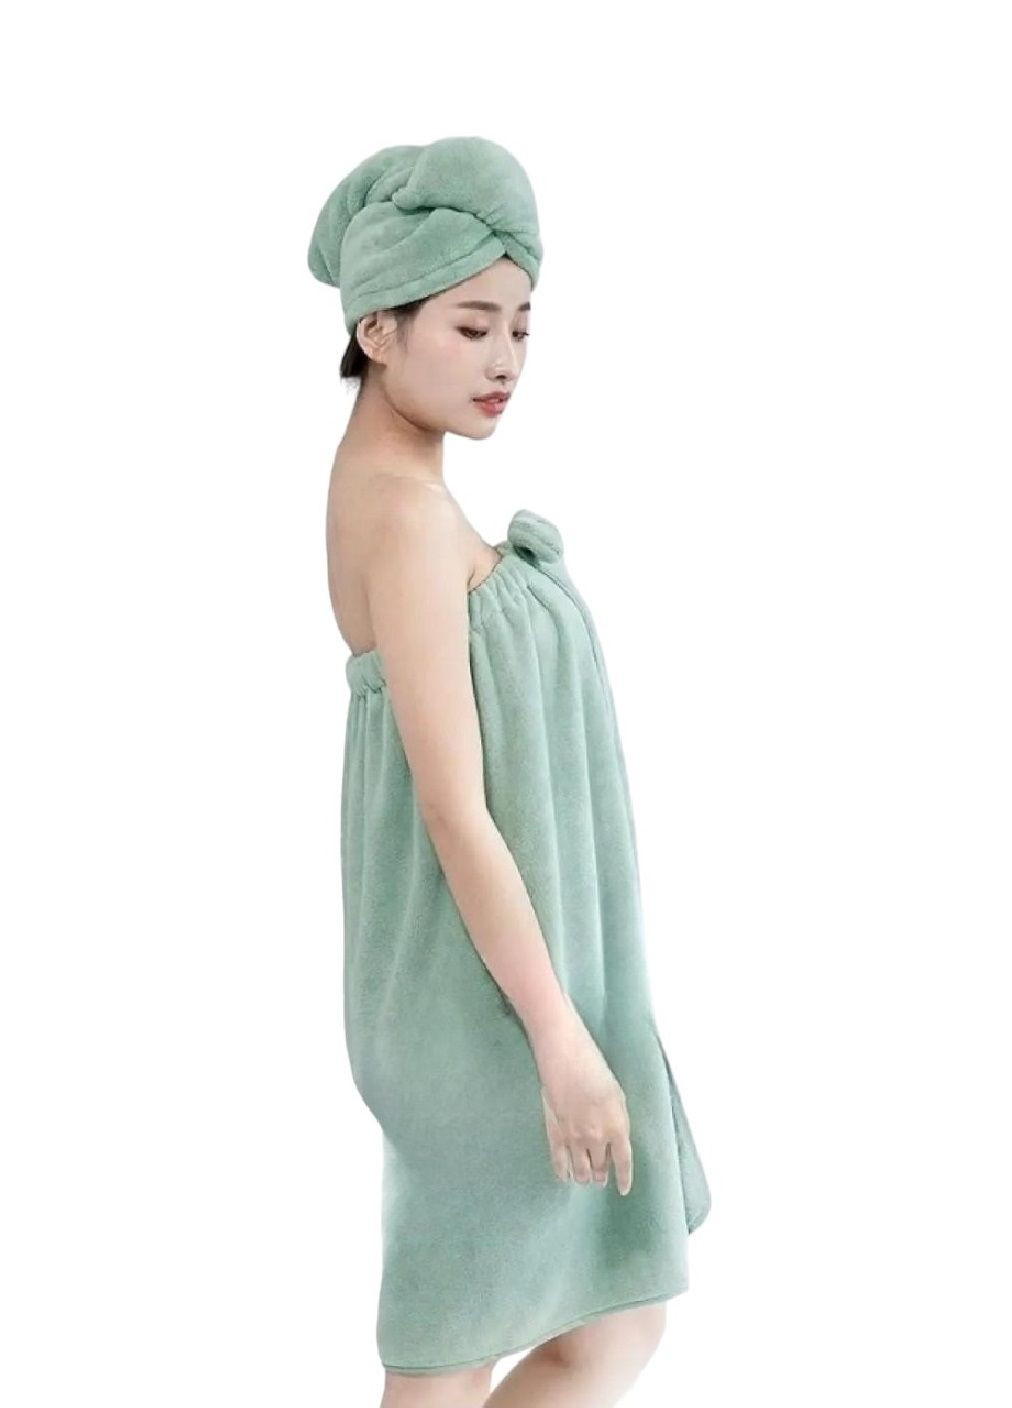 Unbranded комплект набор женский полотенце халат чалма для бани ванны сауны микрофибра 140х80 см (476435-prob) косичка салатовый однотонный салатовый производство -